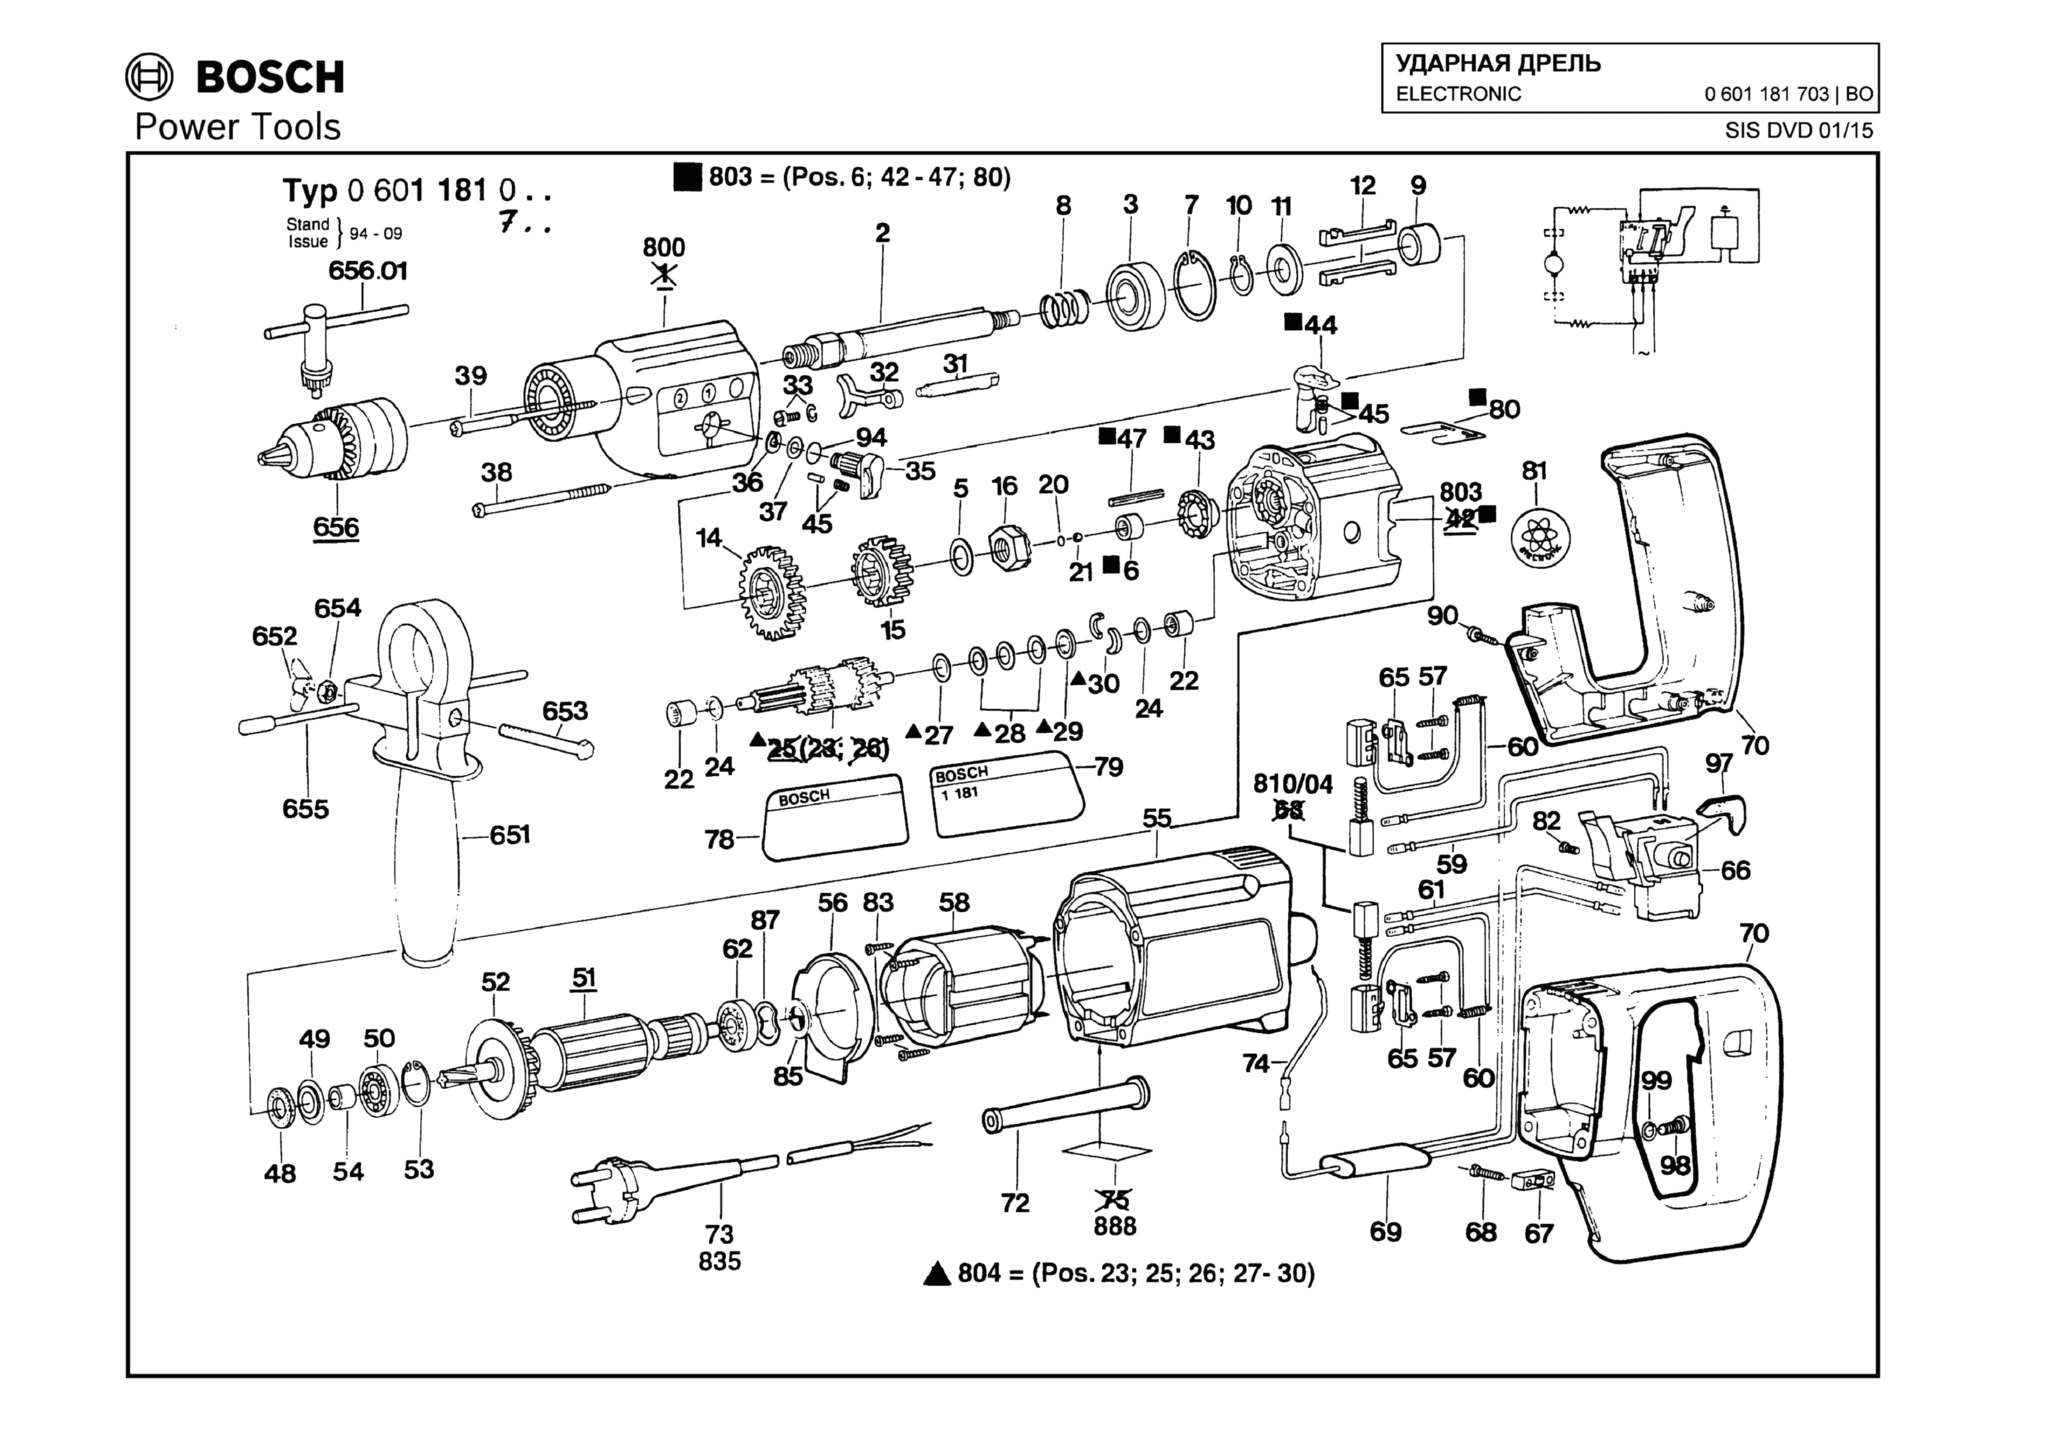 Запчасти, схема и деталировка Bosch ELECTRONIC (ТИП 0601181703)